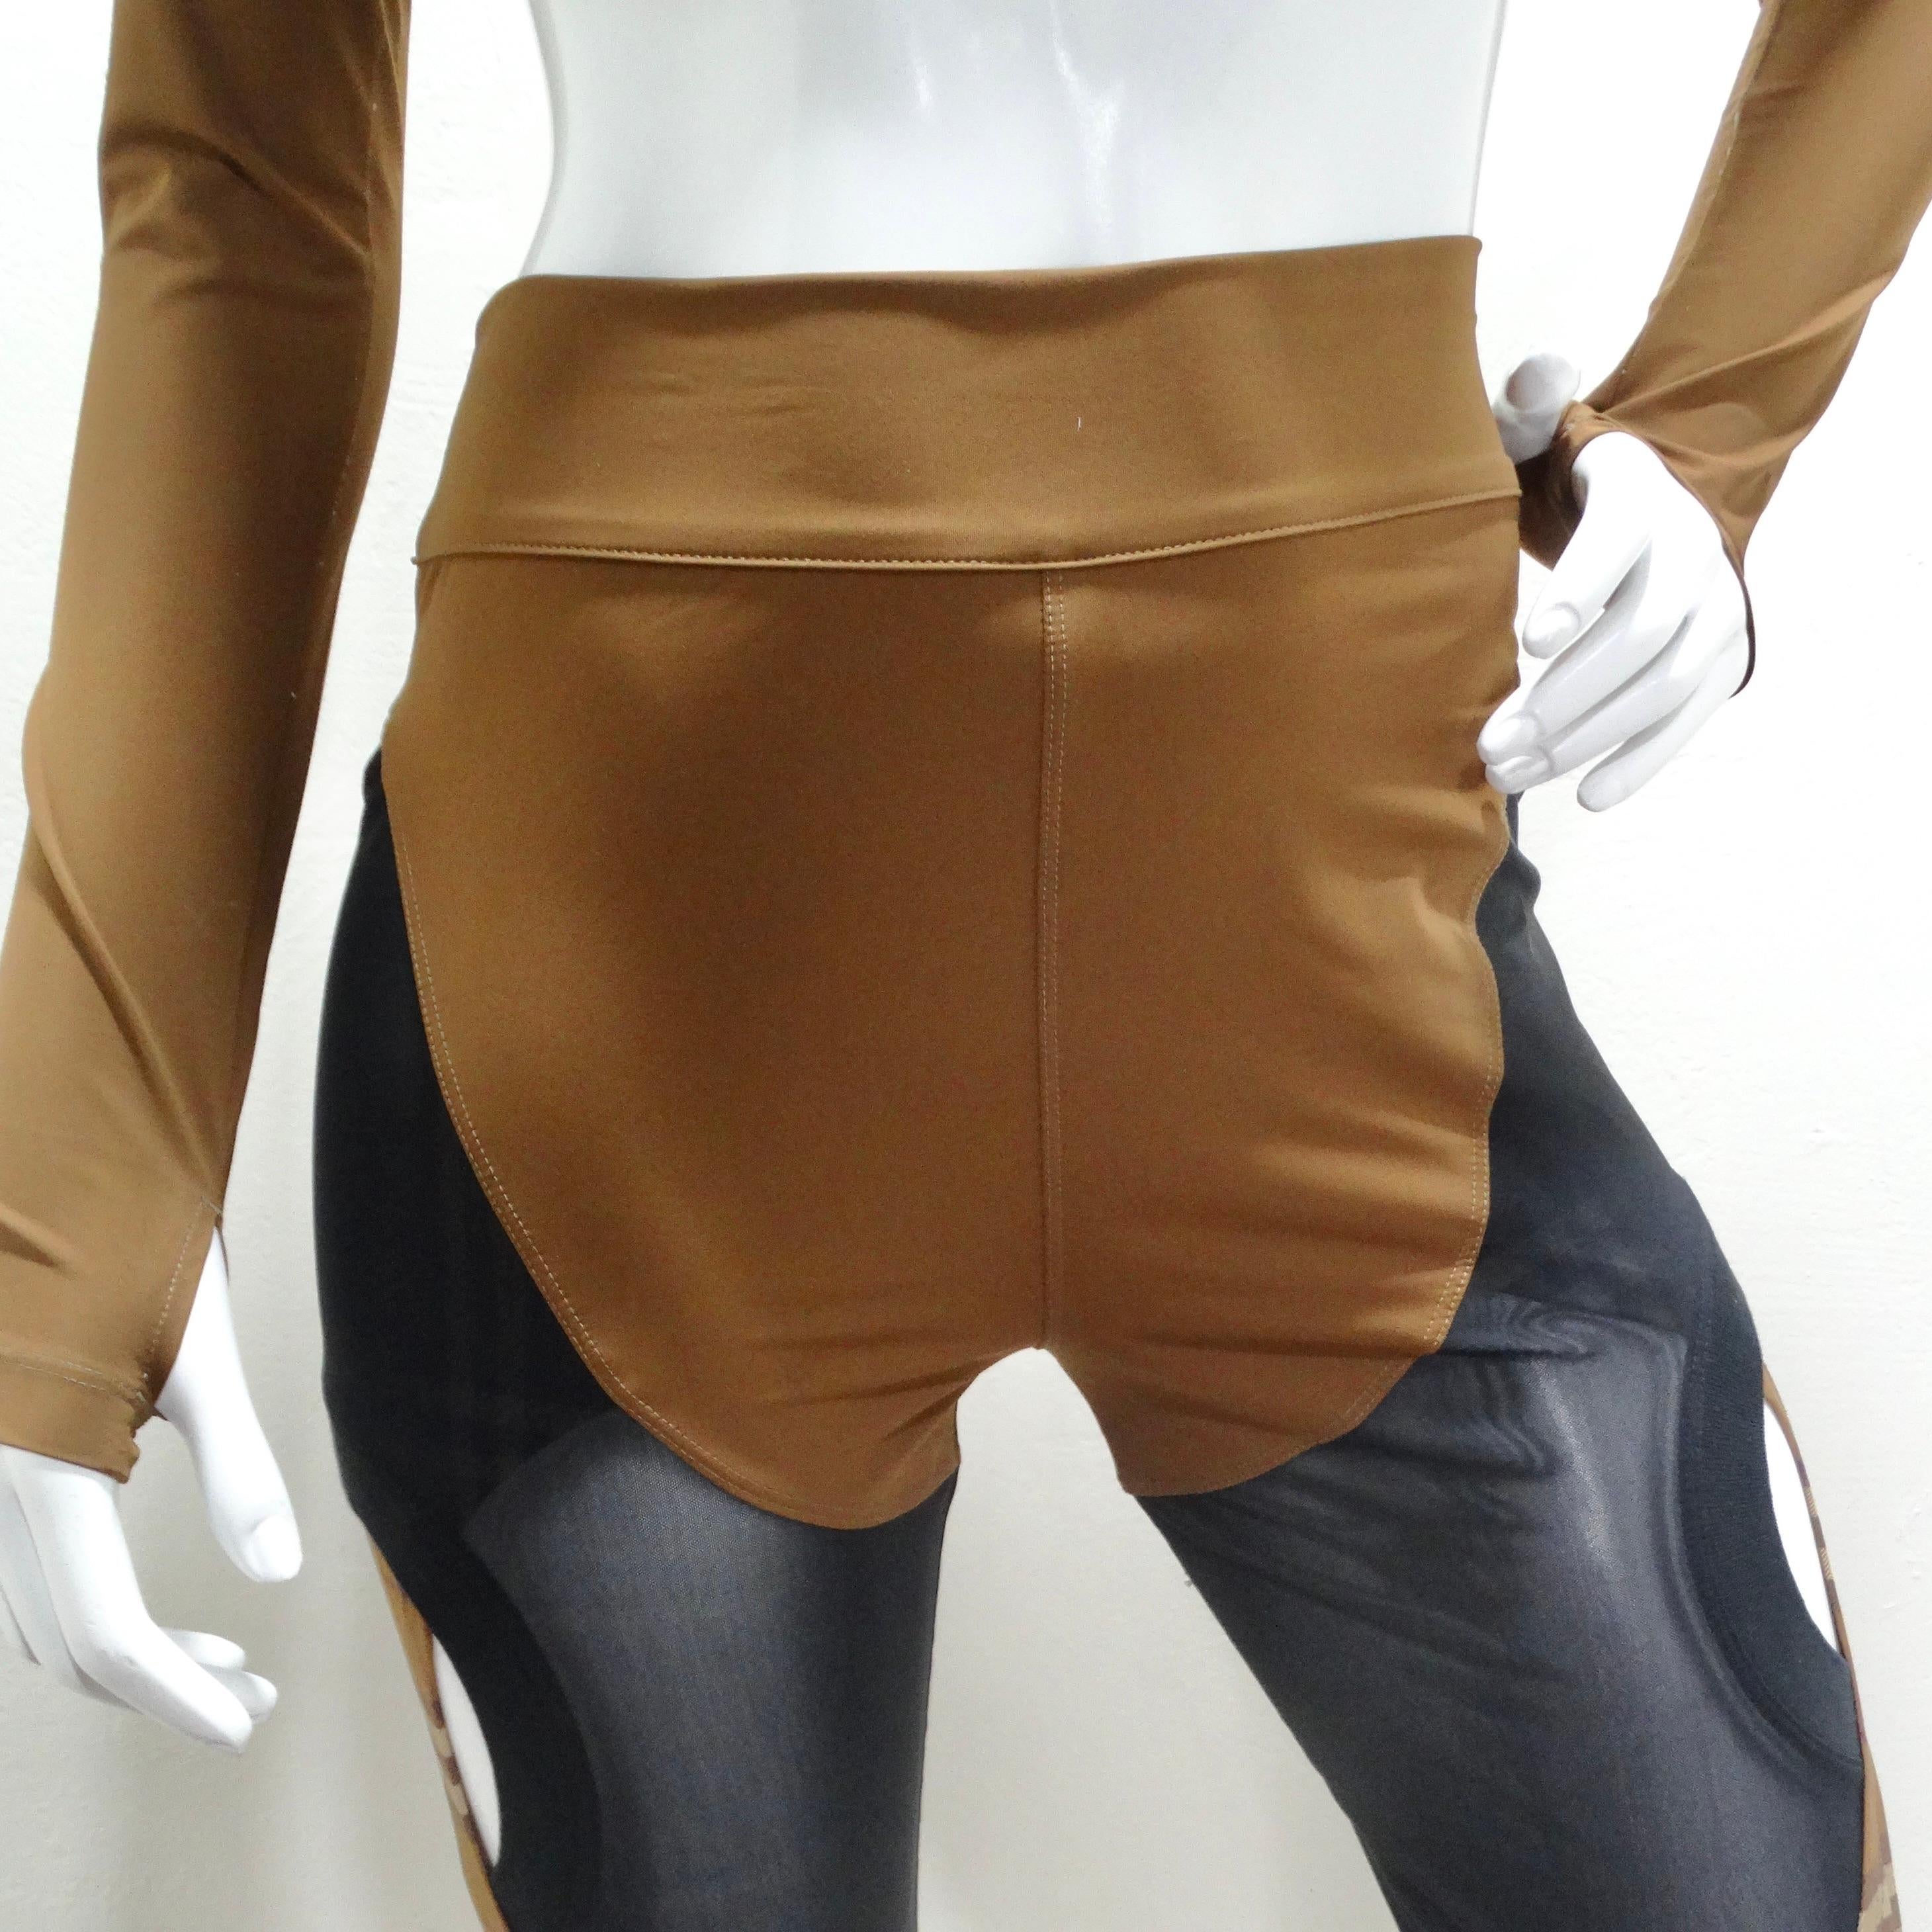 Voici le legging Burberry Sporty Panel Brown - une fusion étonnante de style et de fonctionnalité qui élèvera votre tenue d'entraînement à de nouveaux sommets. Confectionné dans une teinte marron clair, ce legging présente une découpe unique avec